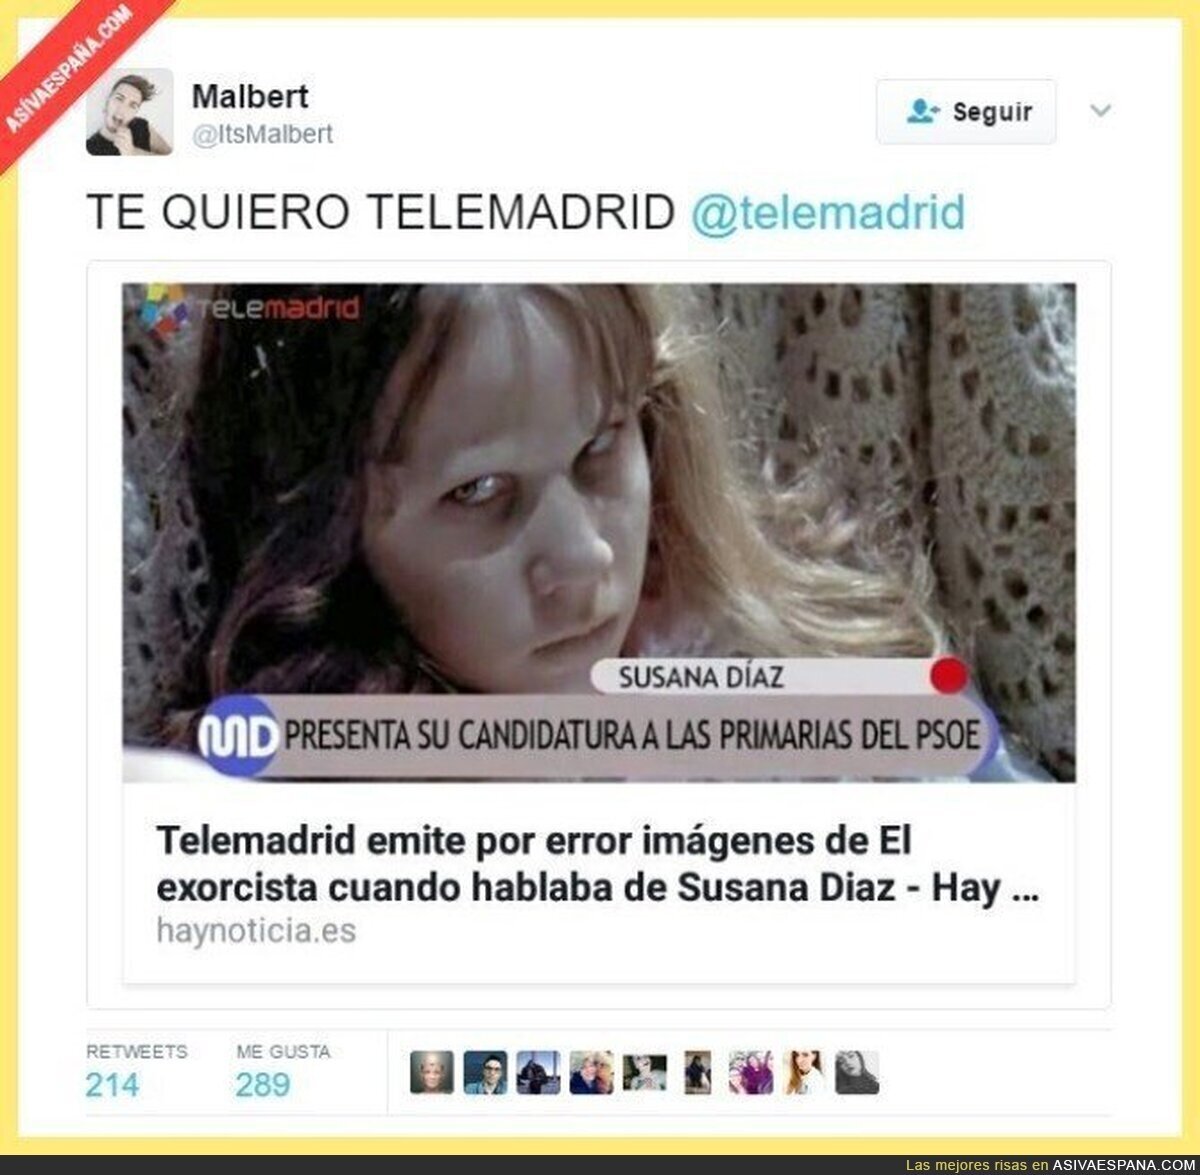 El "error" de Telemadrid mientras hablaban de Susana Díaz